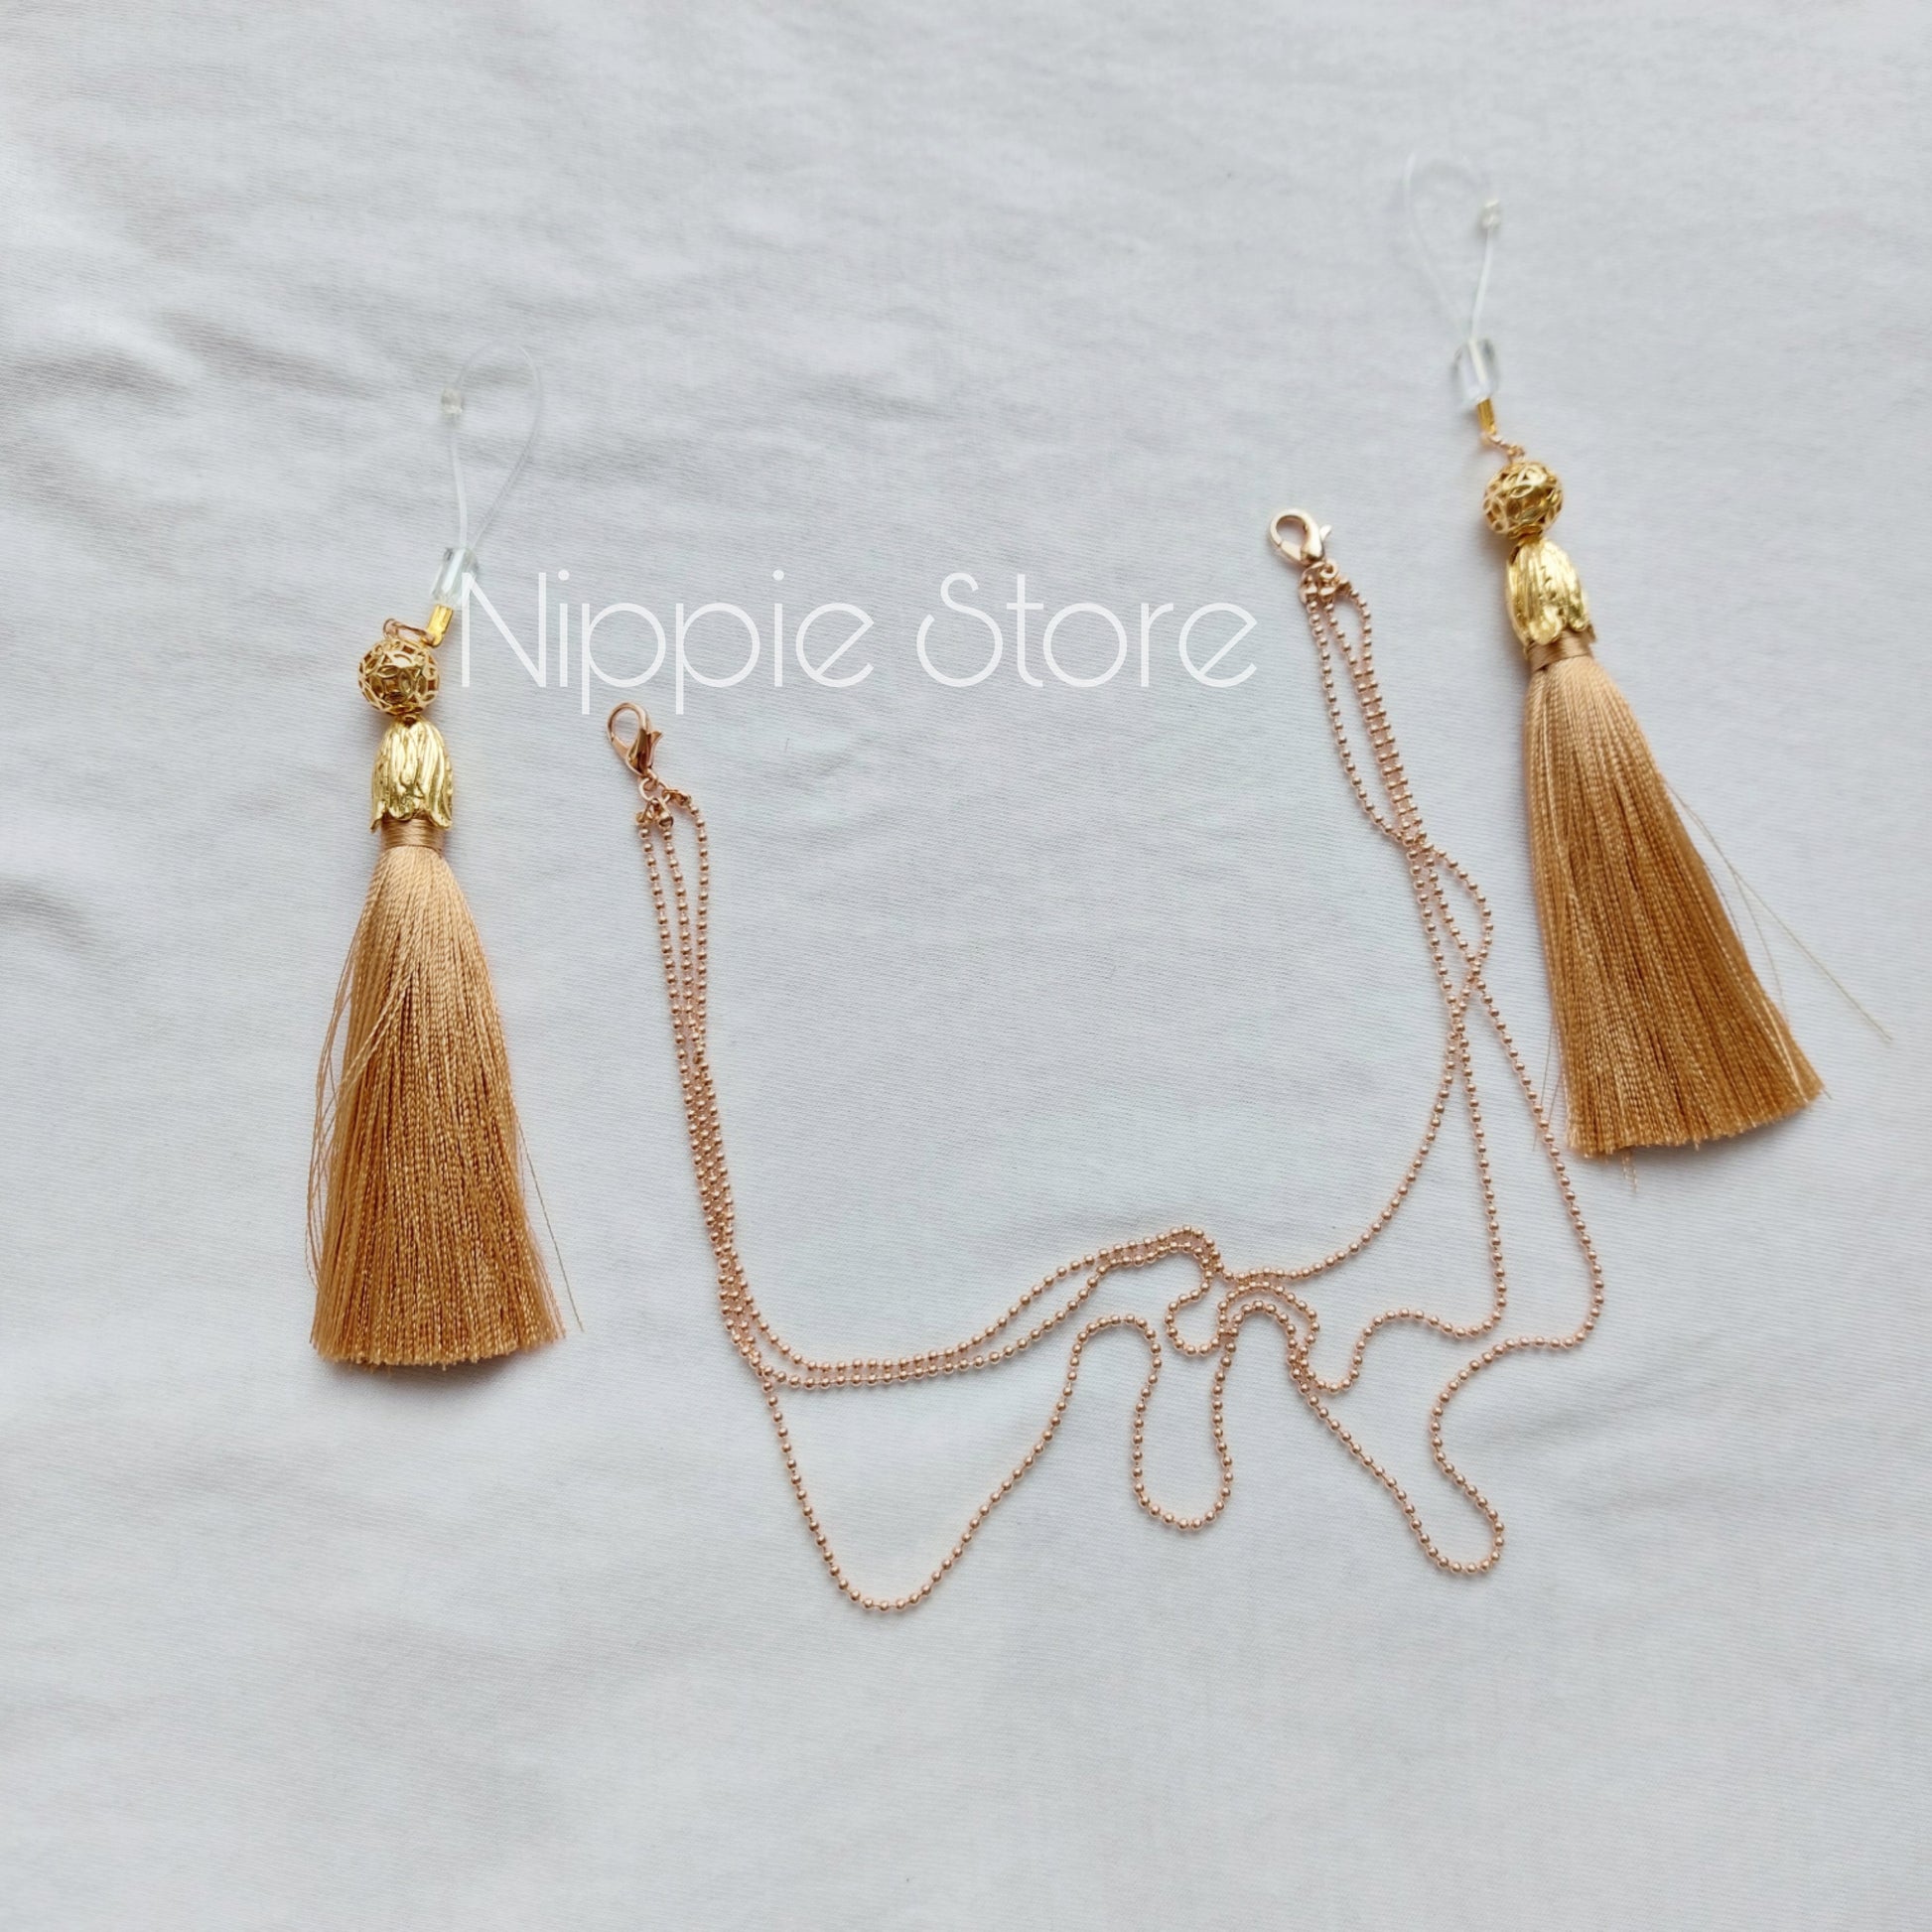 Gorgeous luxurious nipple jewelry nippie with silk – Nippie Store